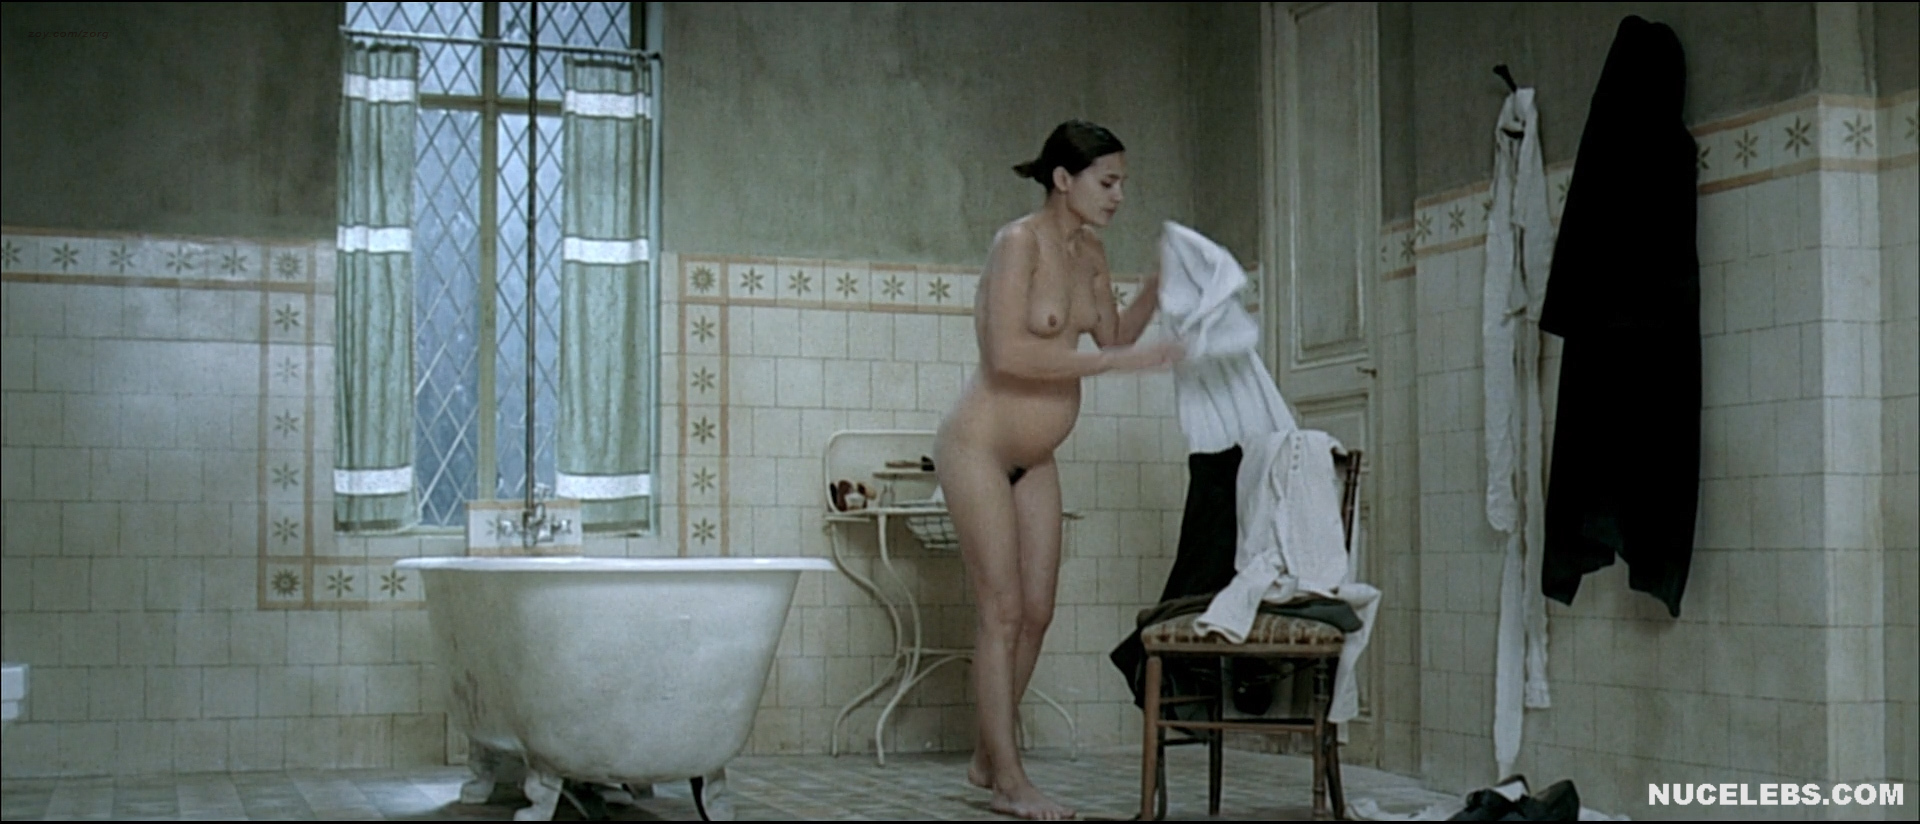 Virginie Ledoyen naked. 